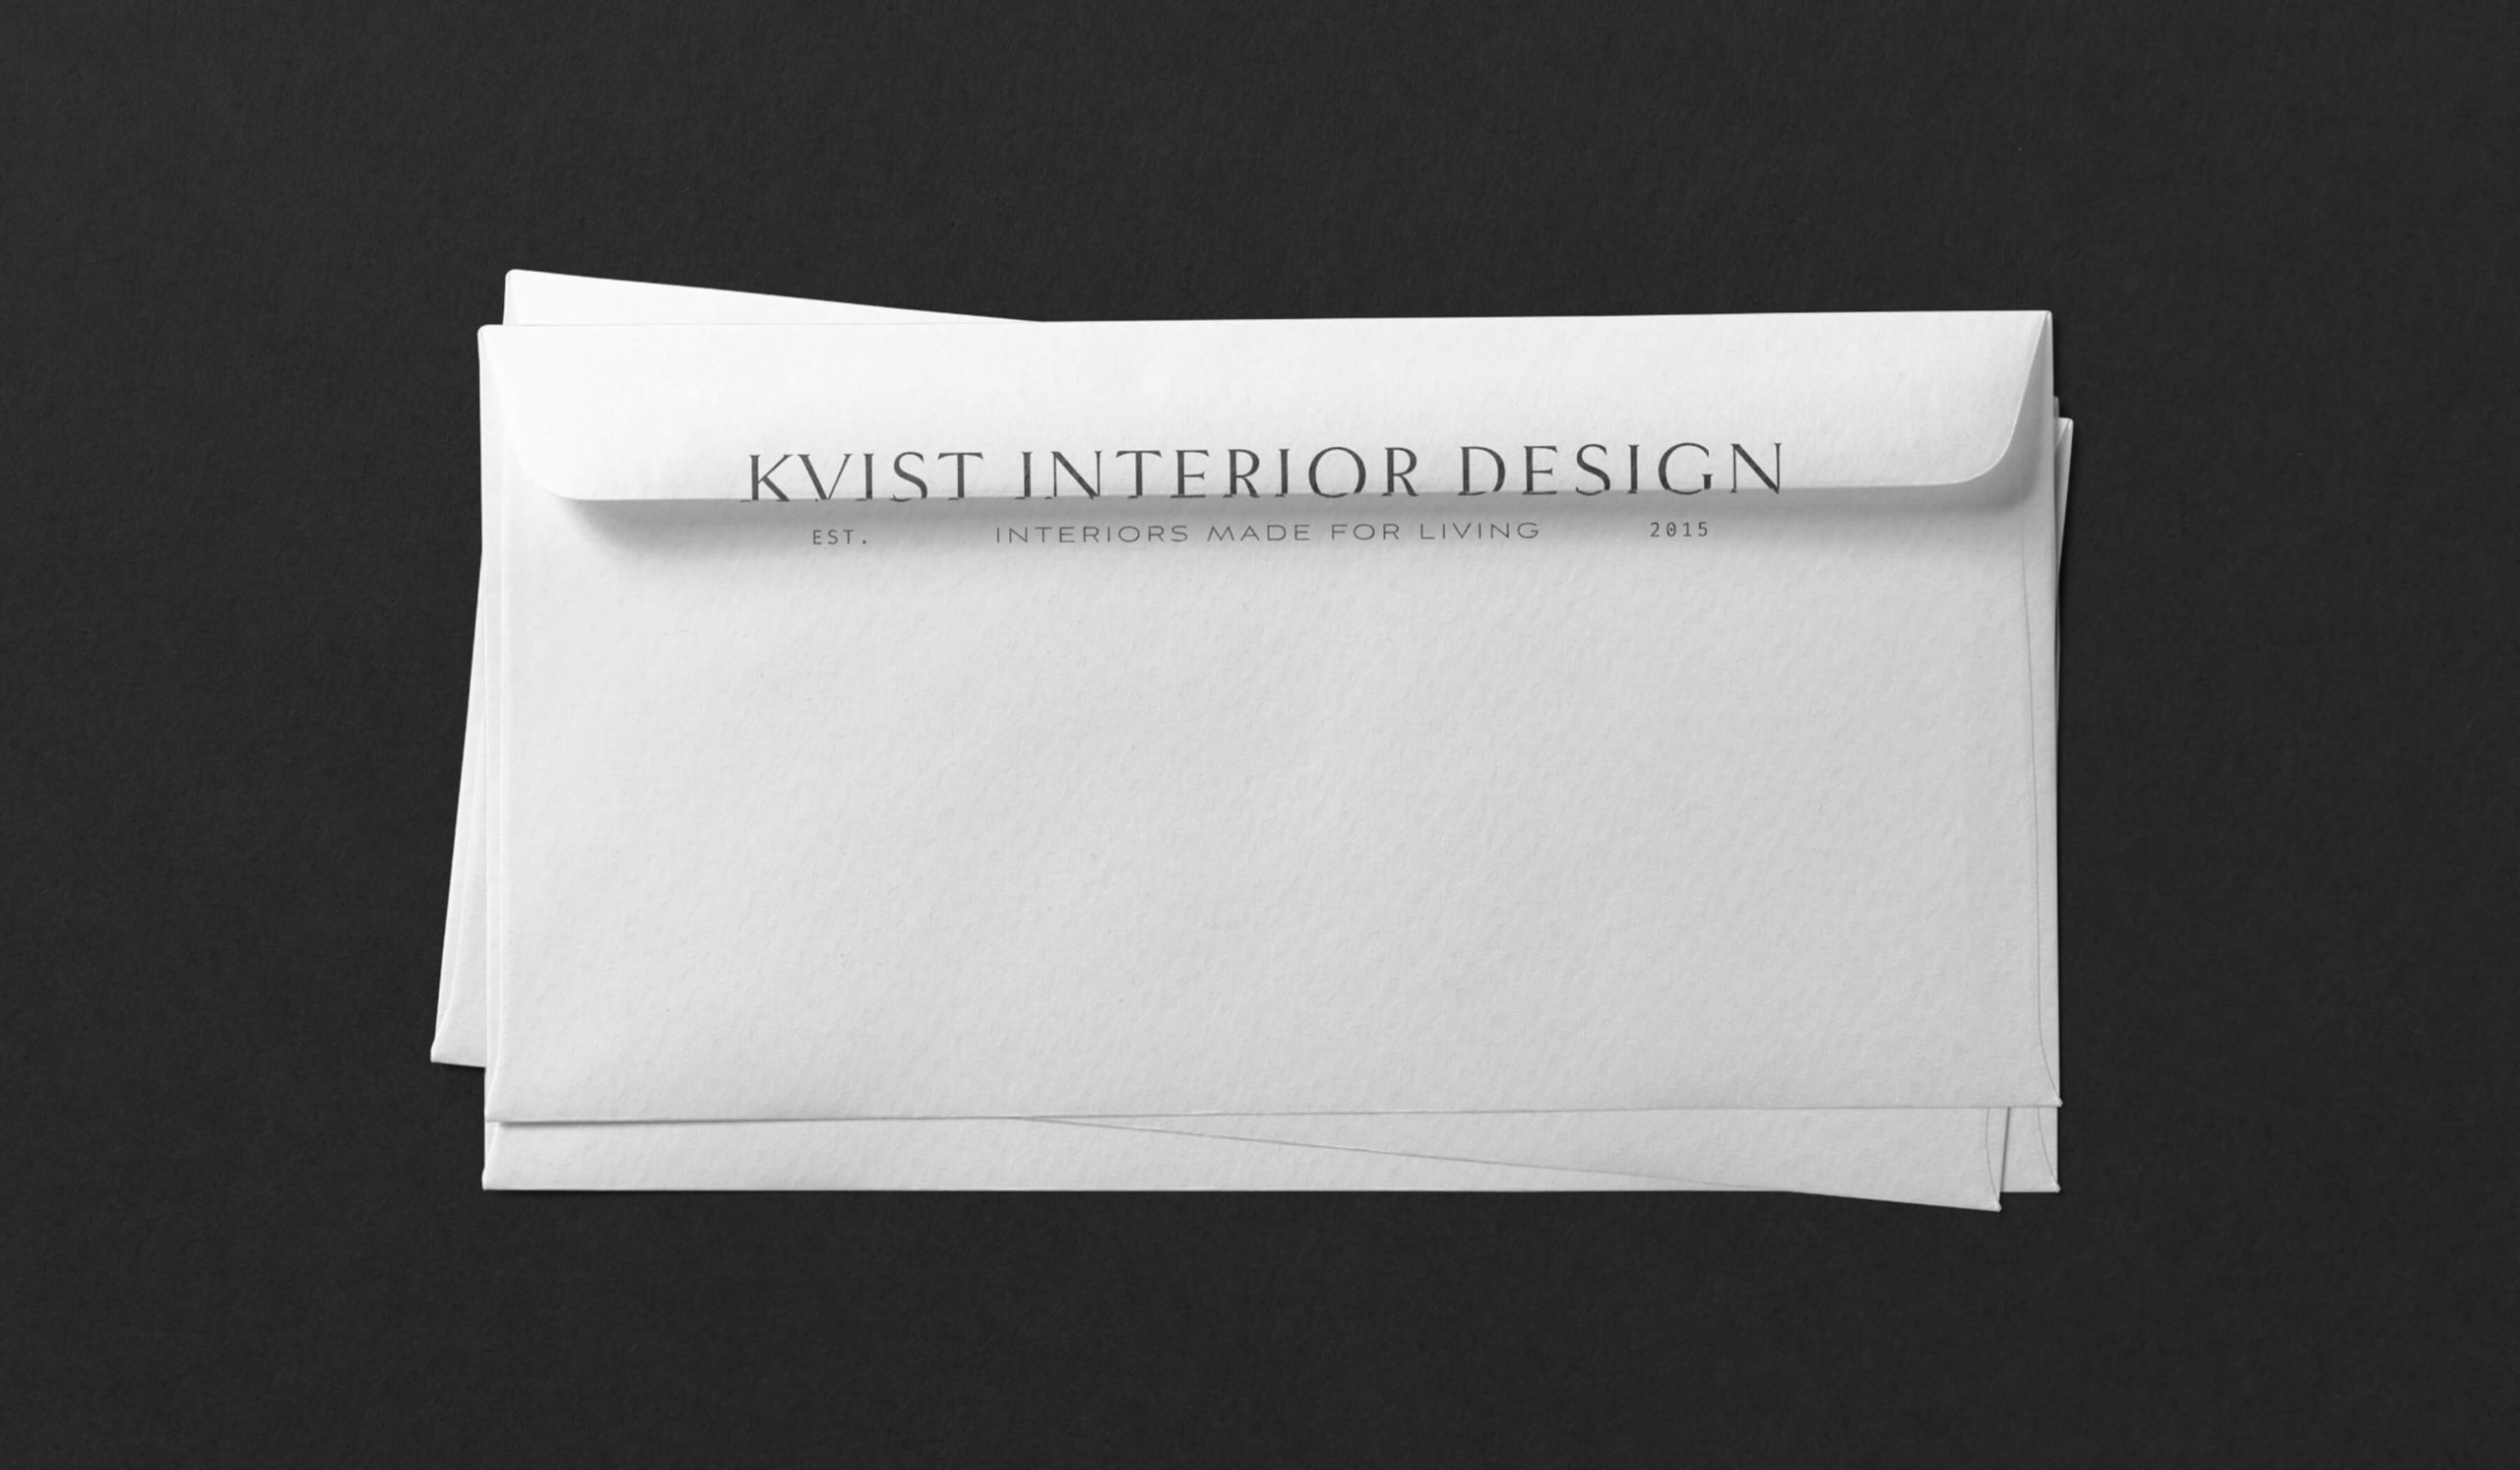 Branded envelopes for KVIST brand identity